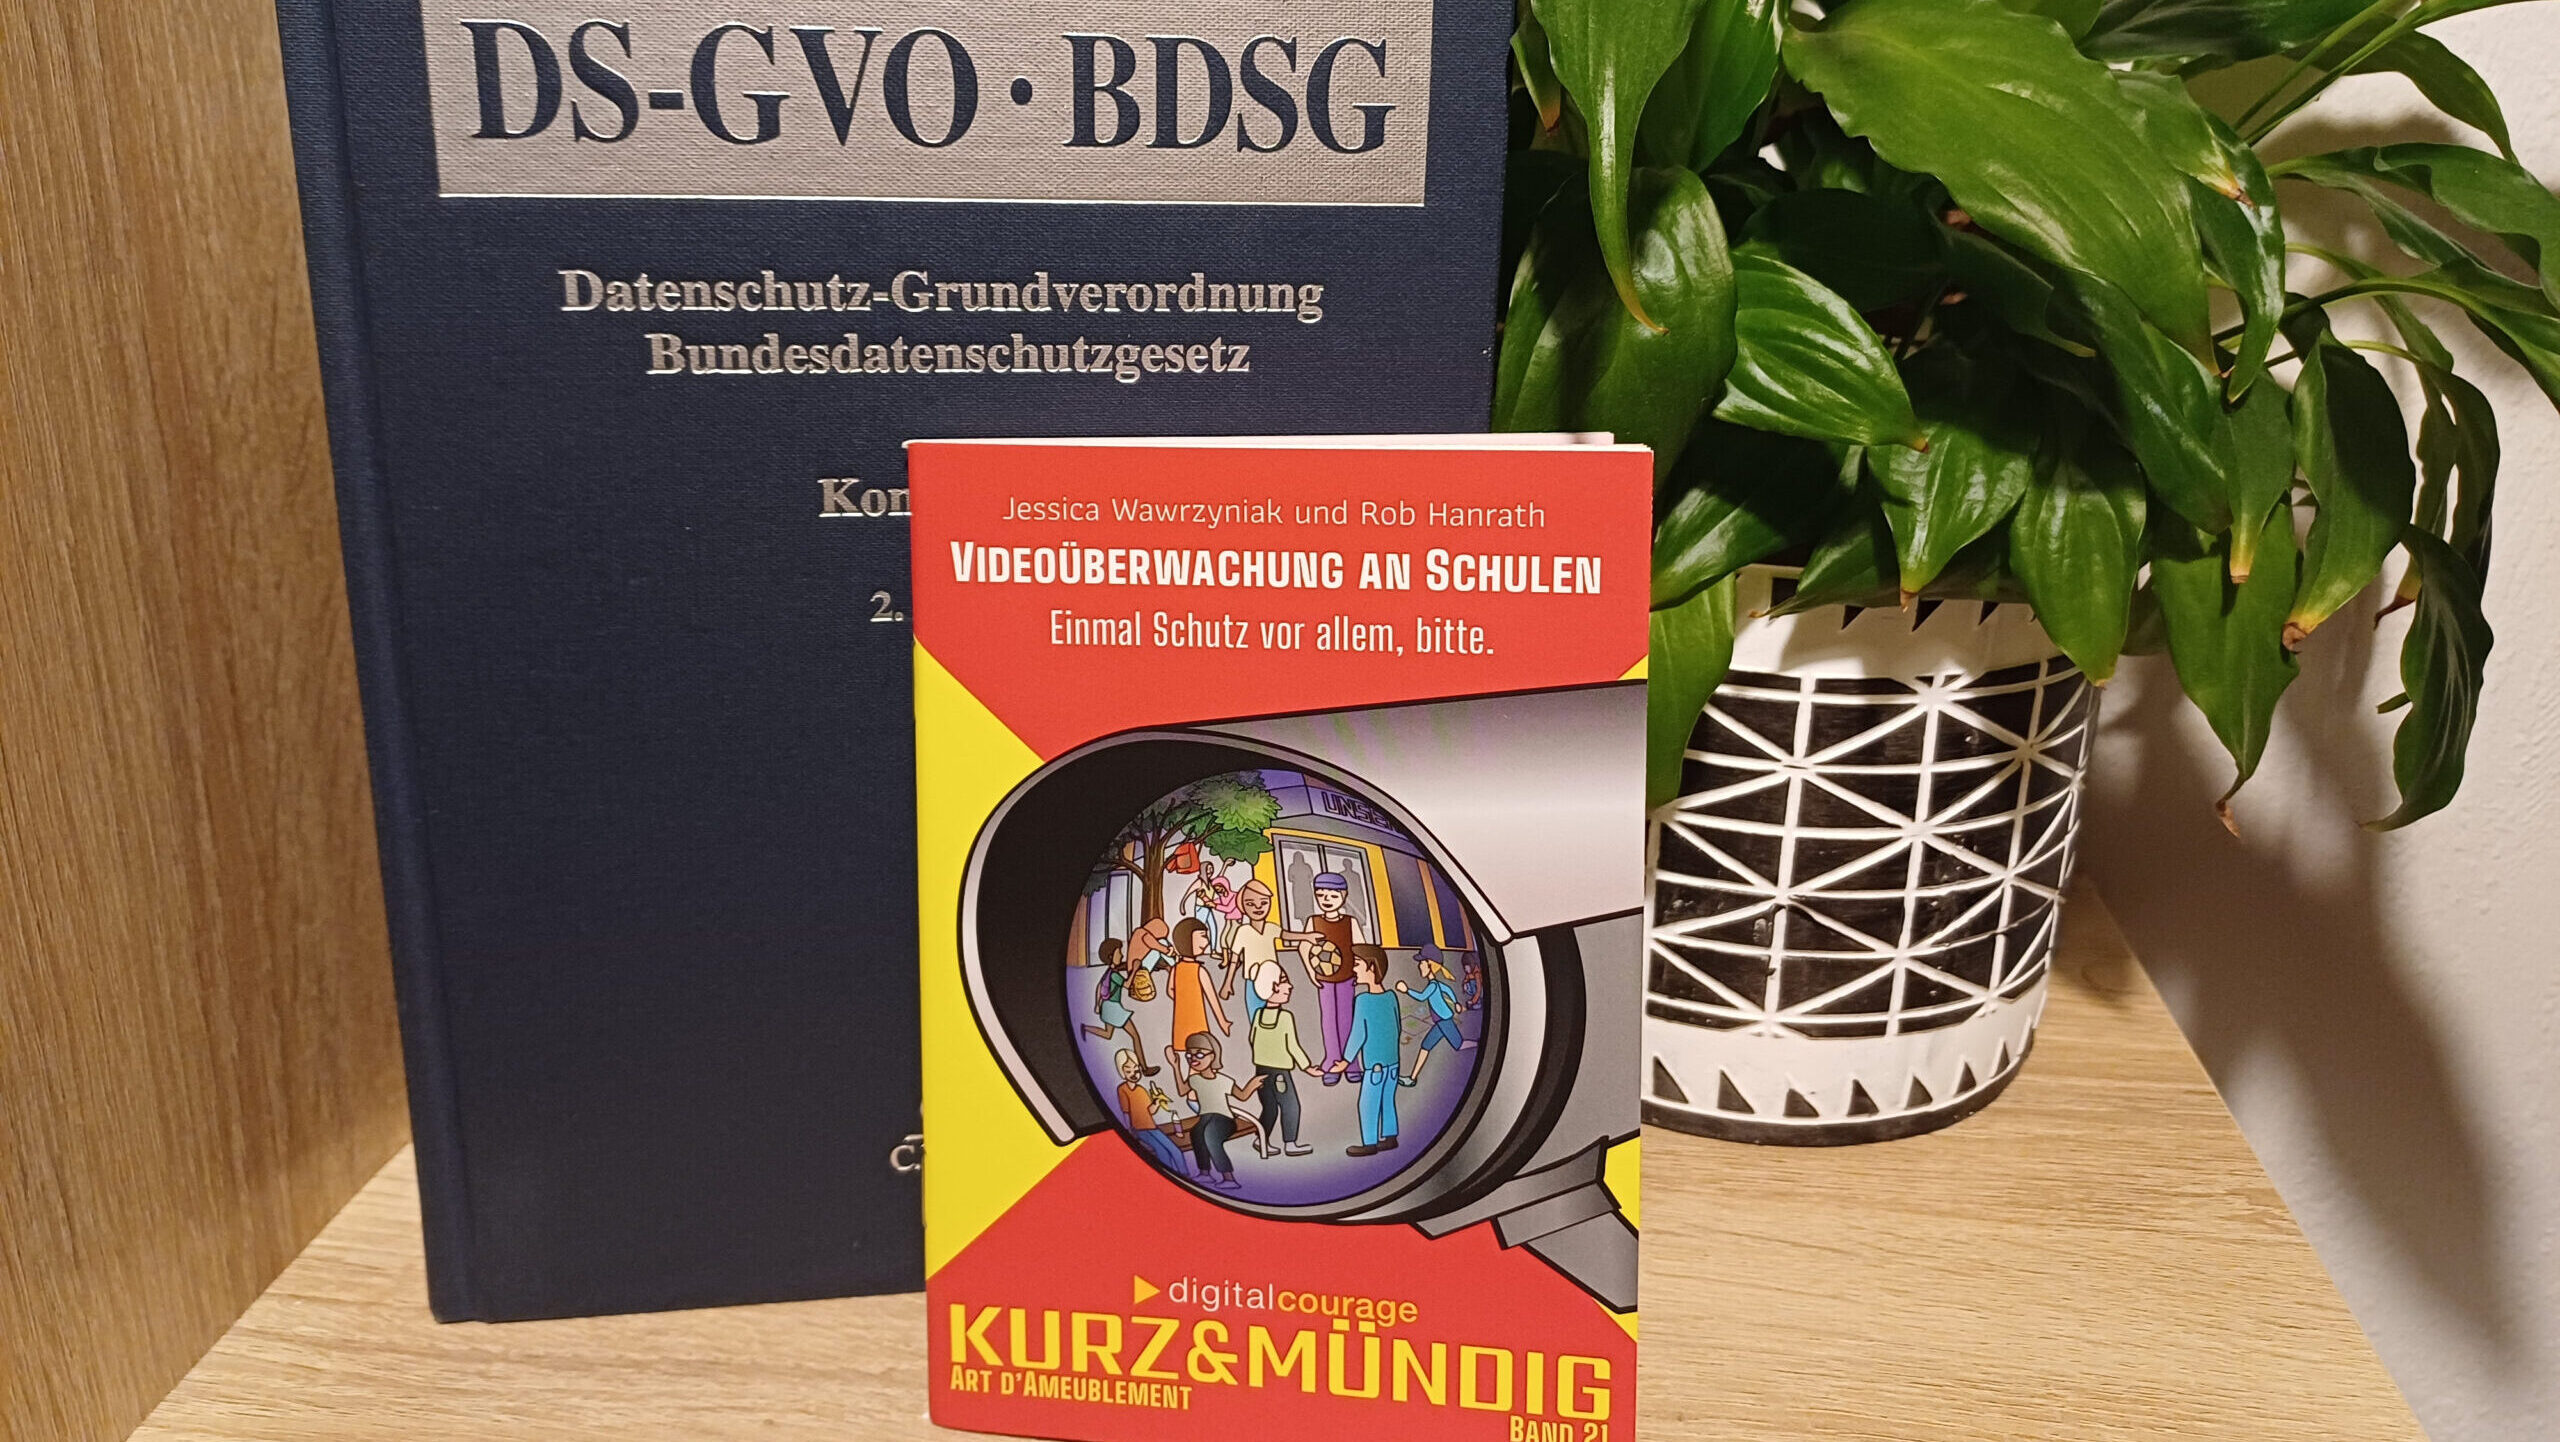 Das Mini-Buch "Videoüberwachung an Schulen" steht in einem regal vor dem Buch "DS-GVO – BDSG". Daneben eine schöne Grünpflanze.